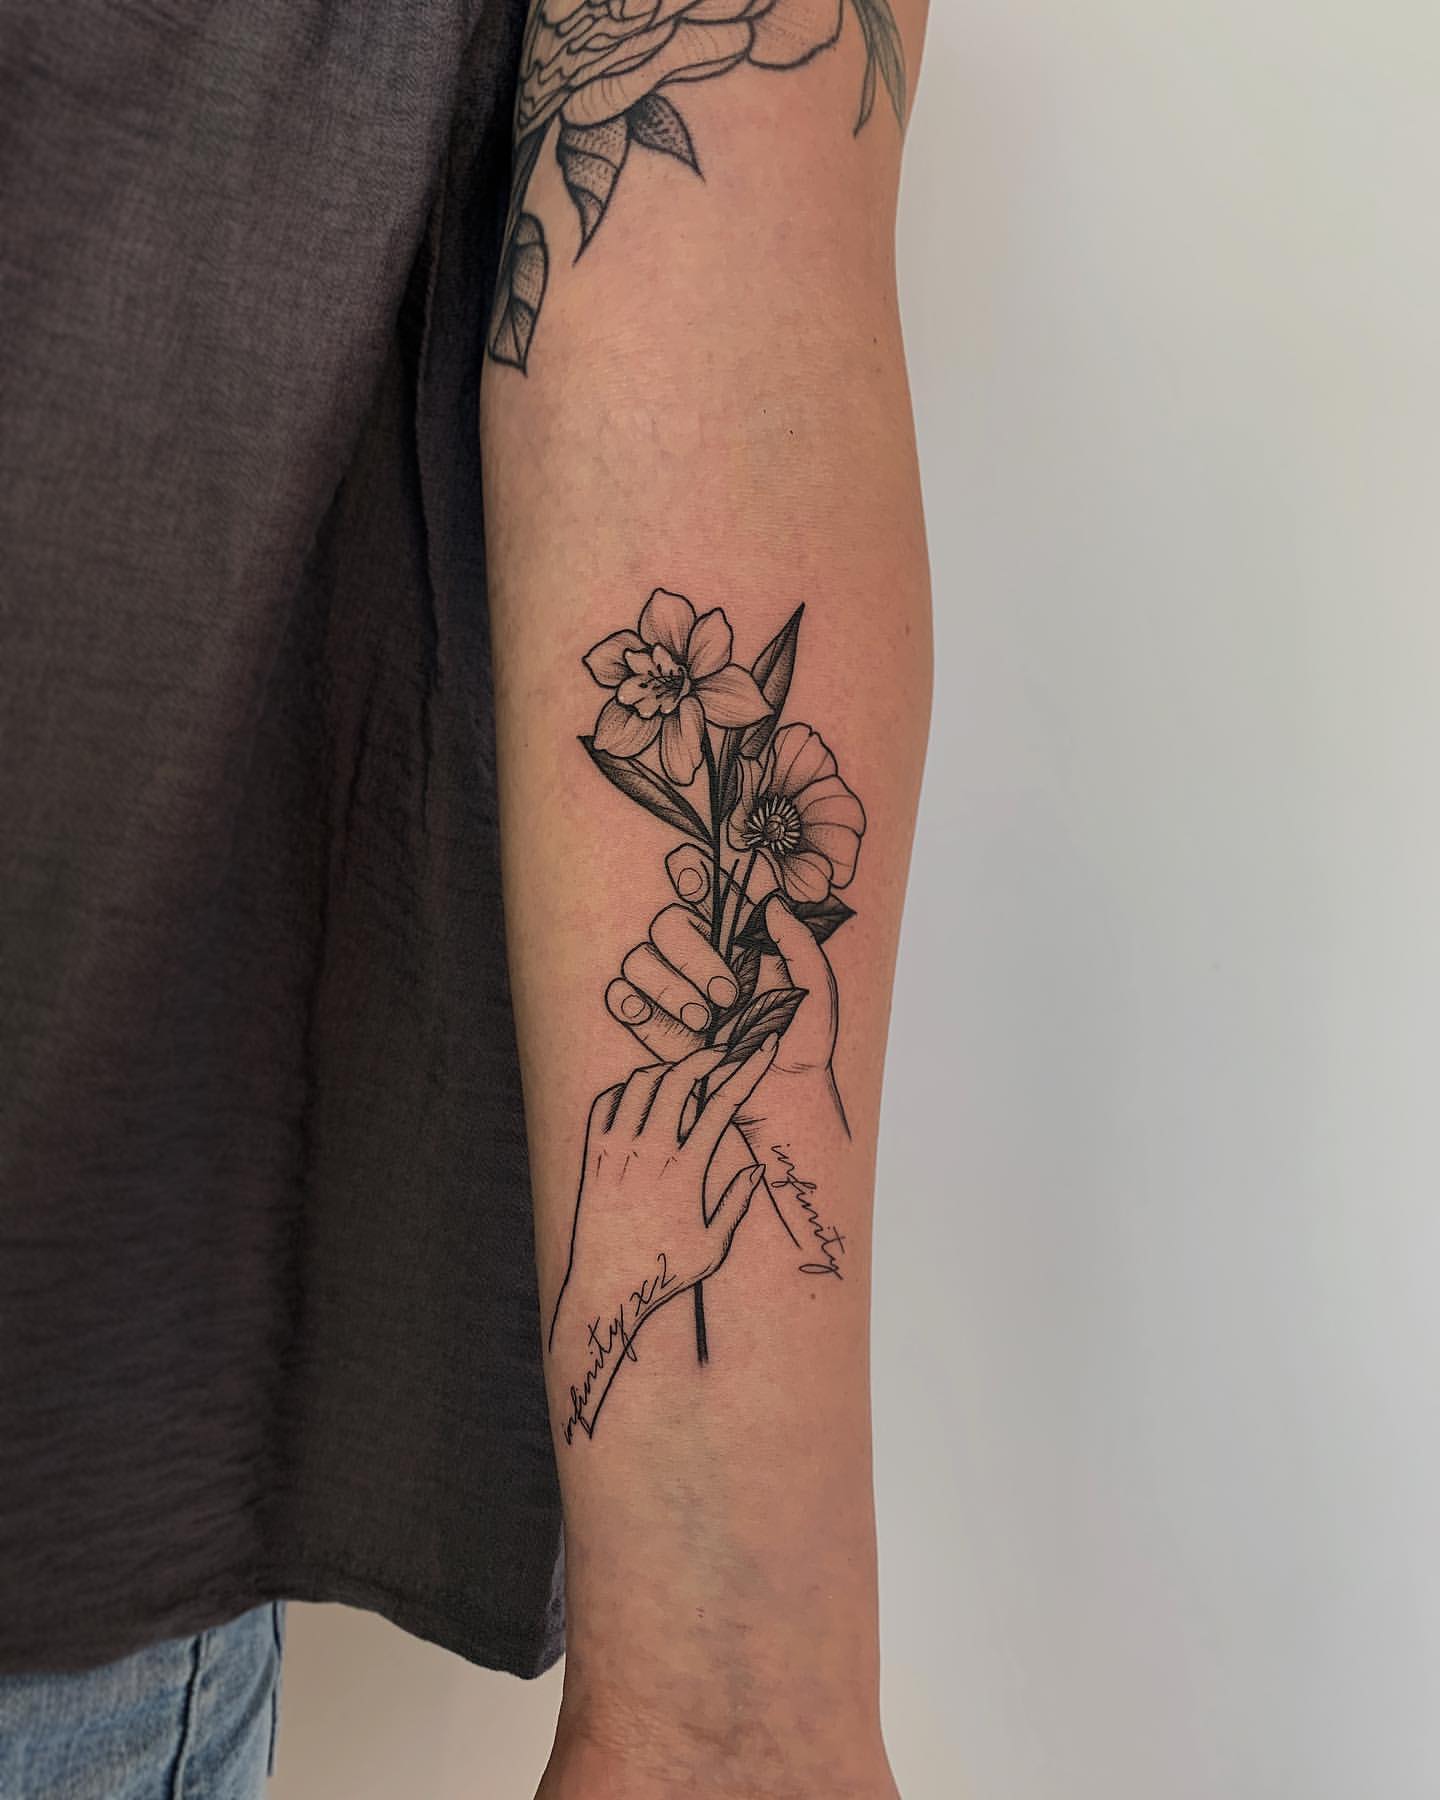 Daffodil Tattoo Ideas 8